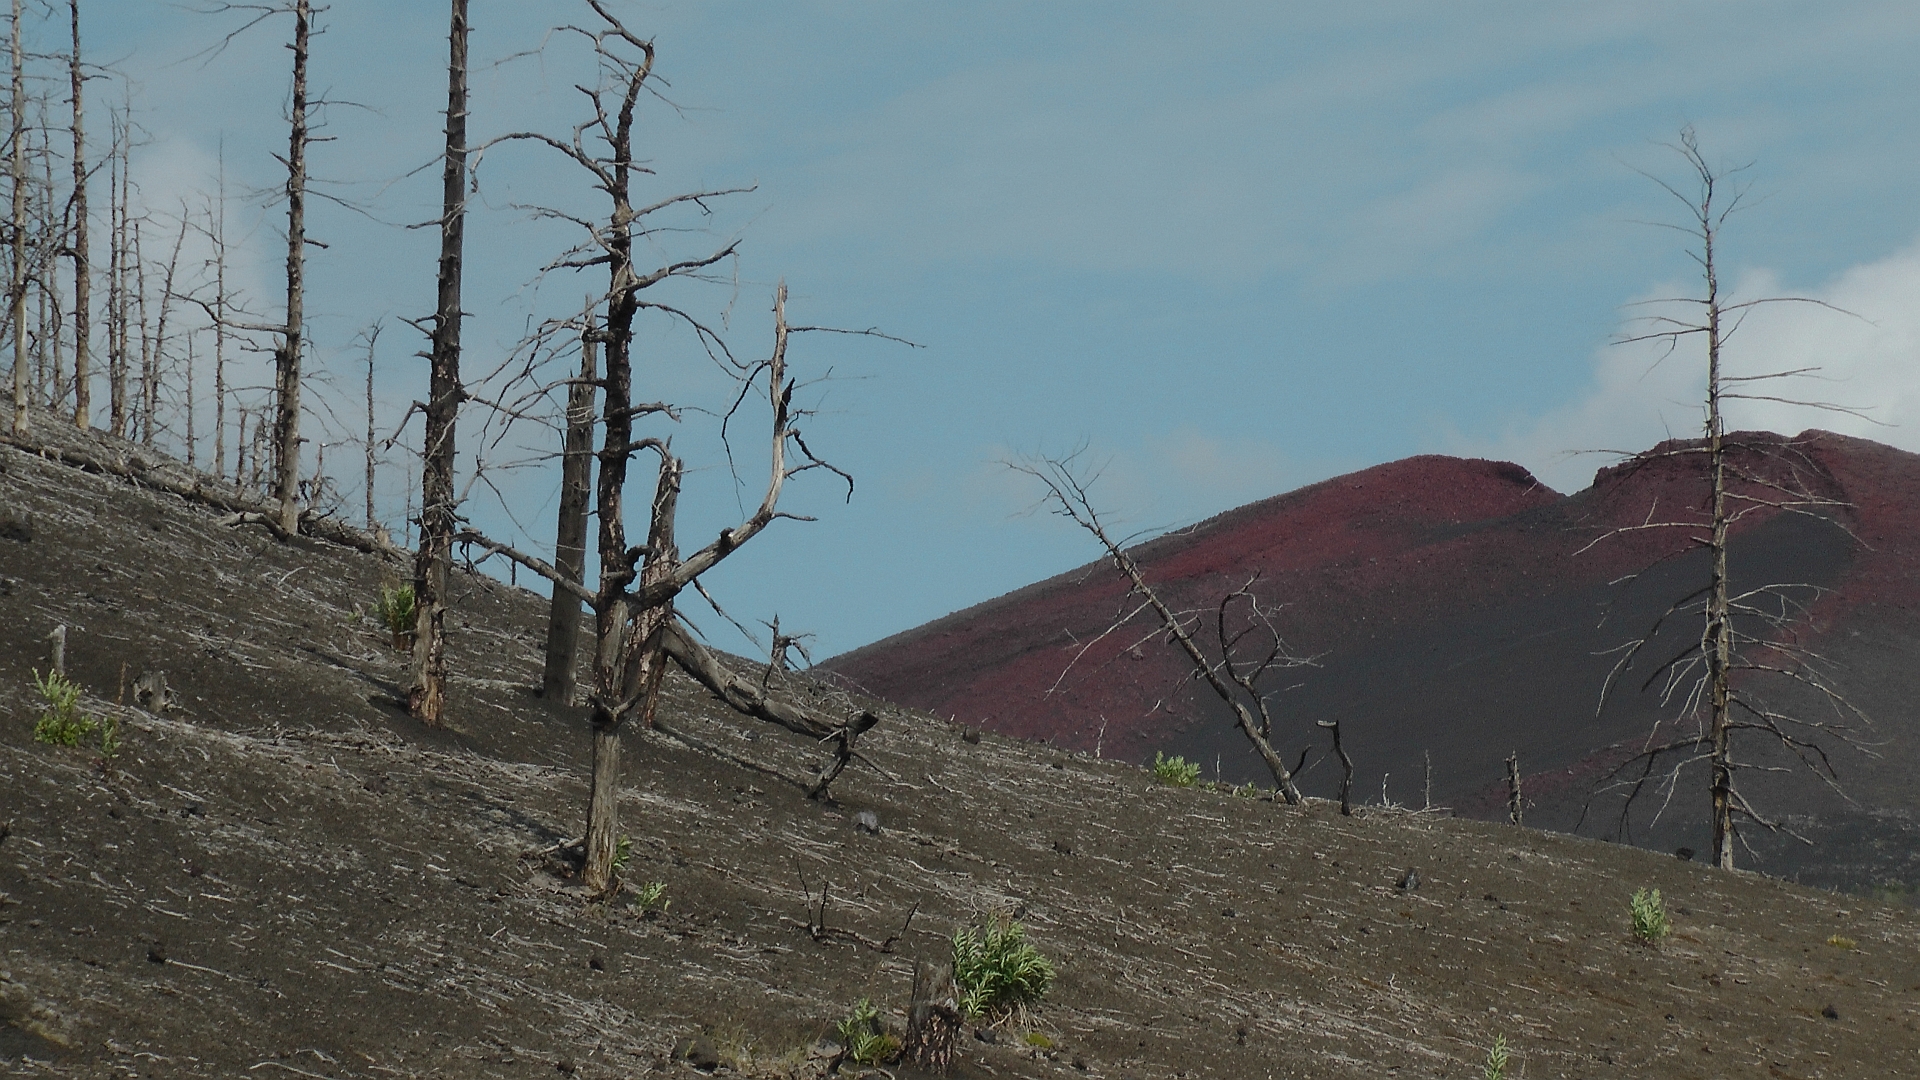 Nach dem letzten Vulkanausbruch im Jahre 2012 regt sich langsam neues Leben